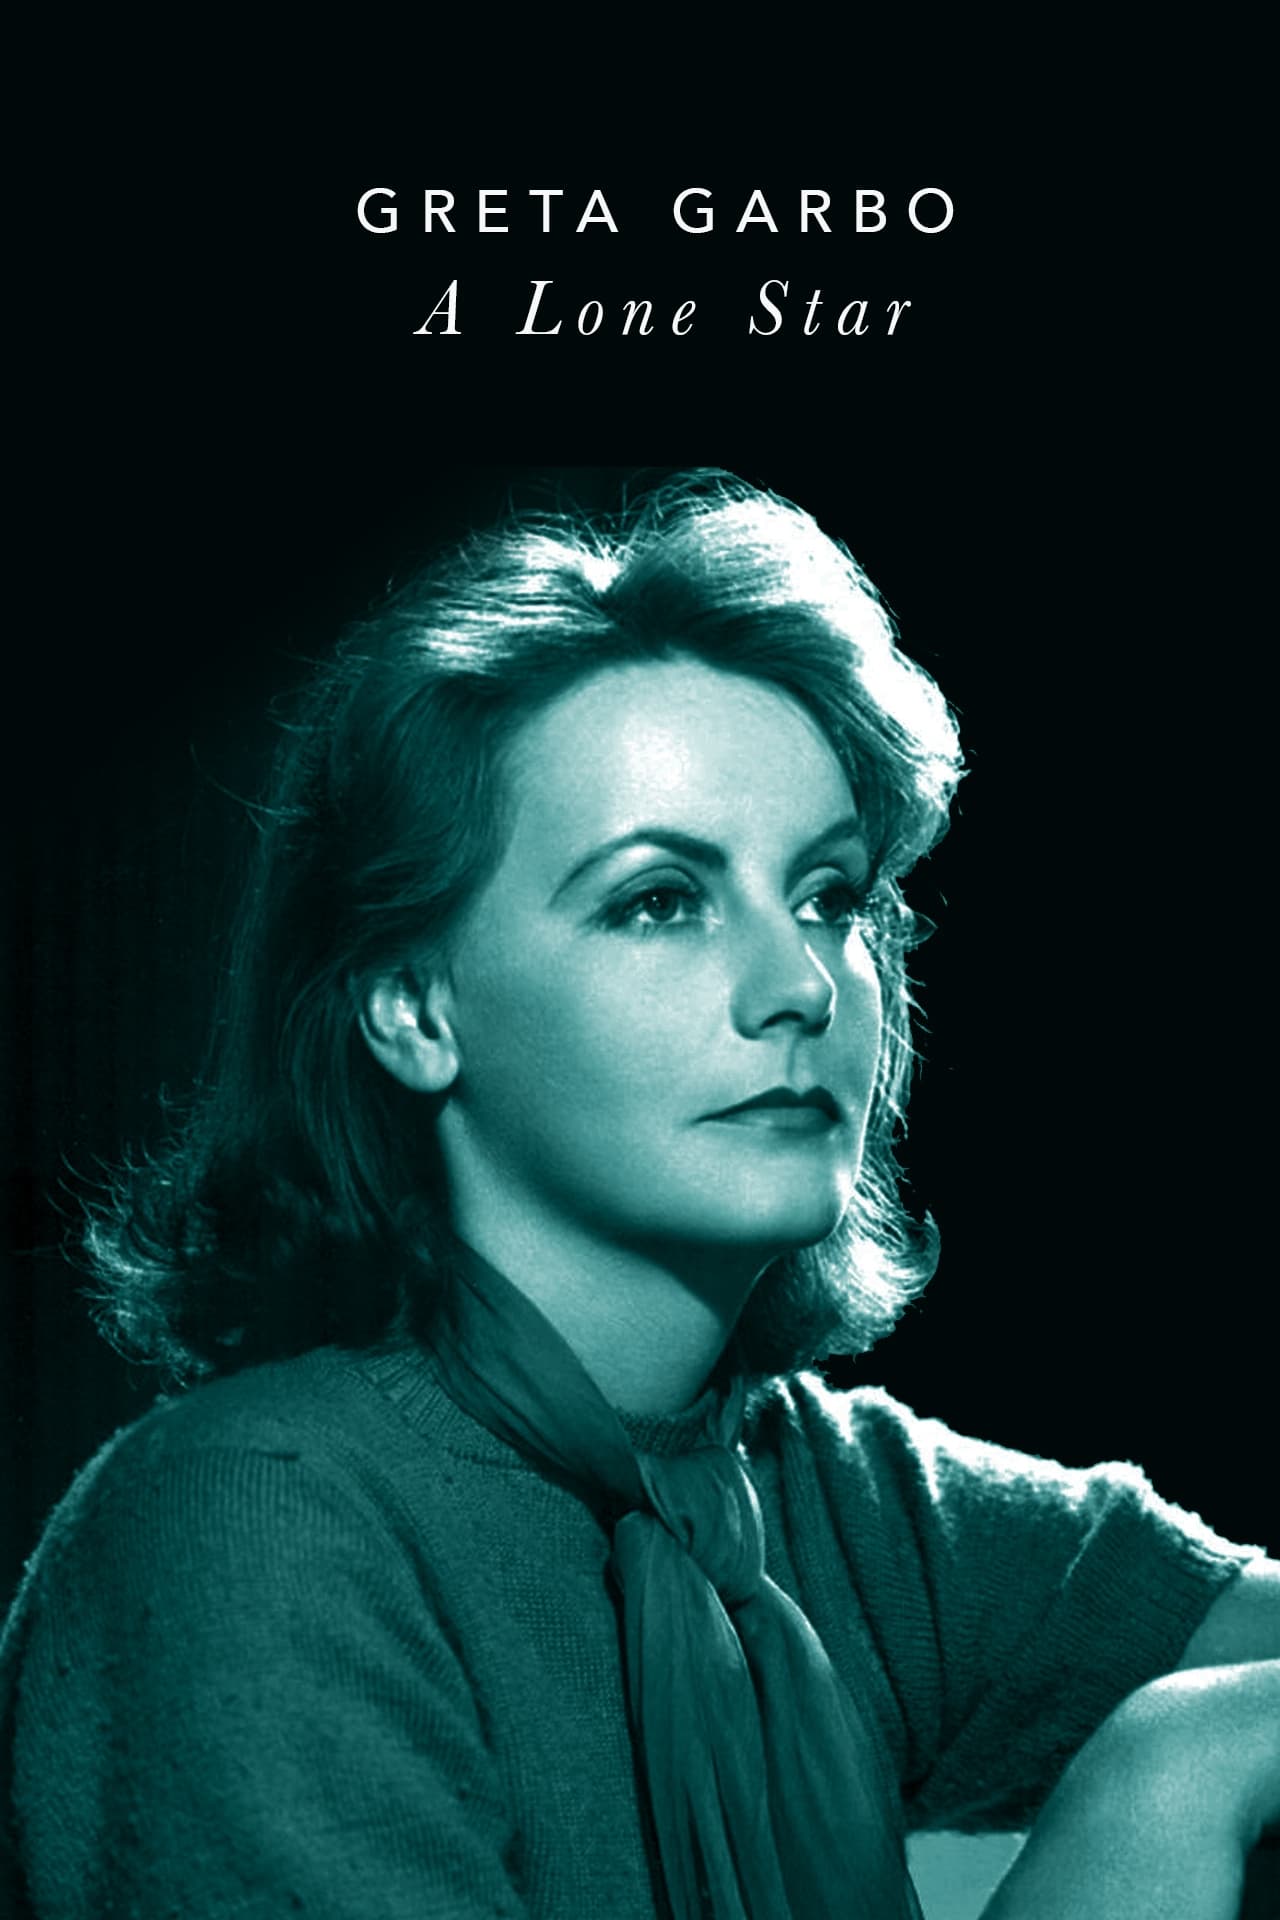 Greta Garbo: A Lone Star (2001)